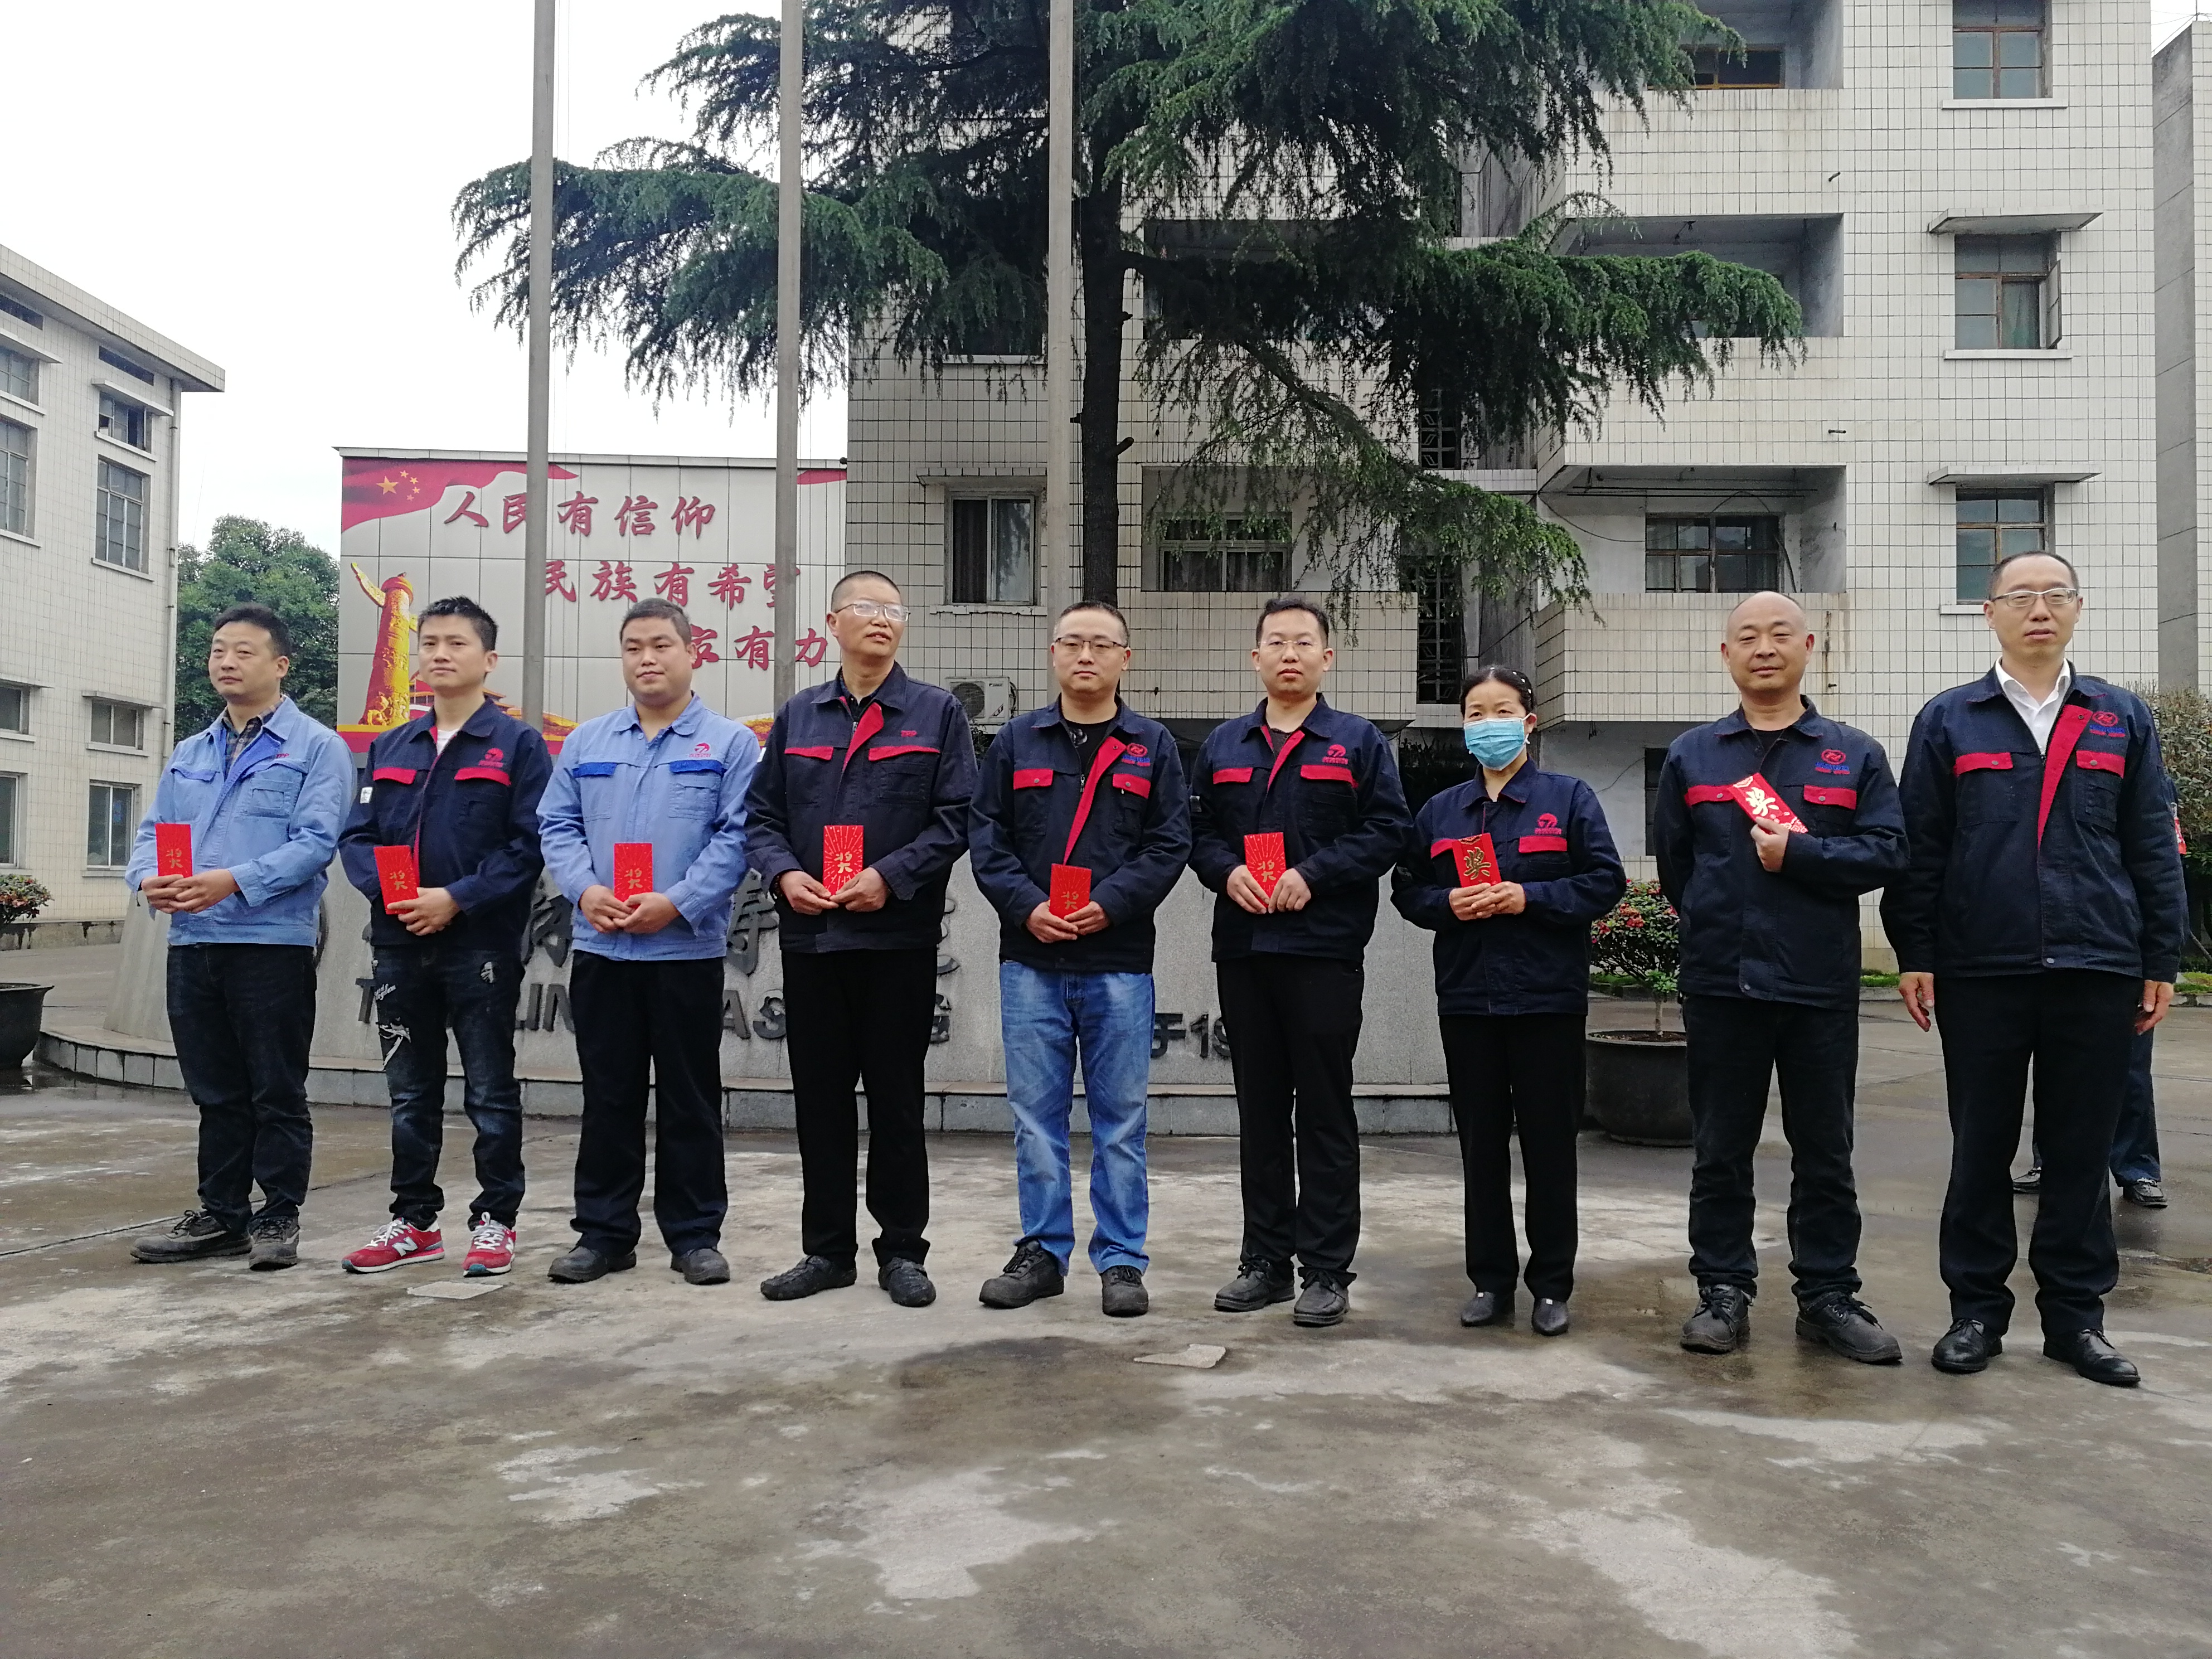 ברכות למפעל Zhengheng Power Casting על השגת 22 פטנטים בשנת 2020